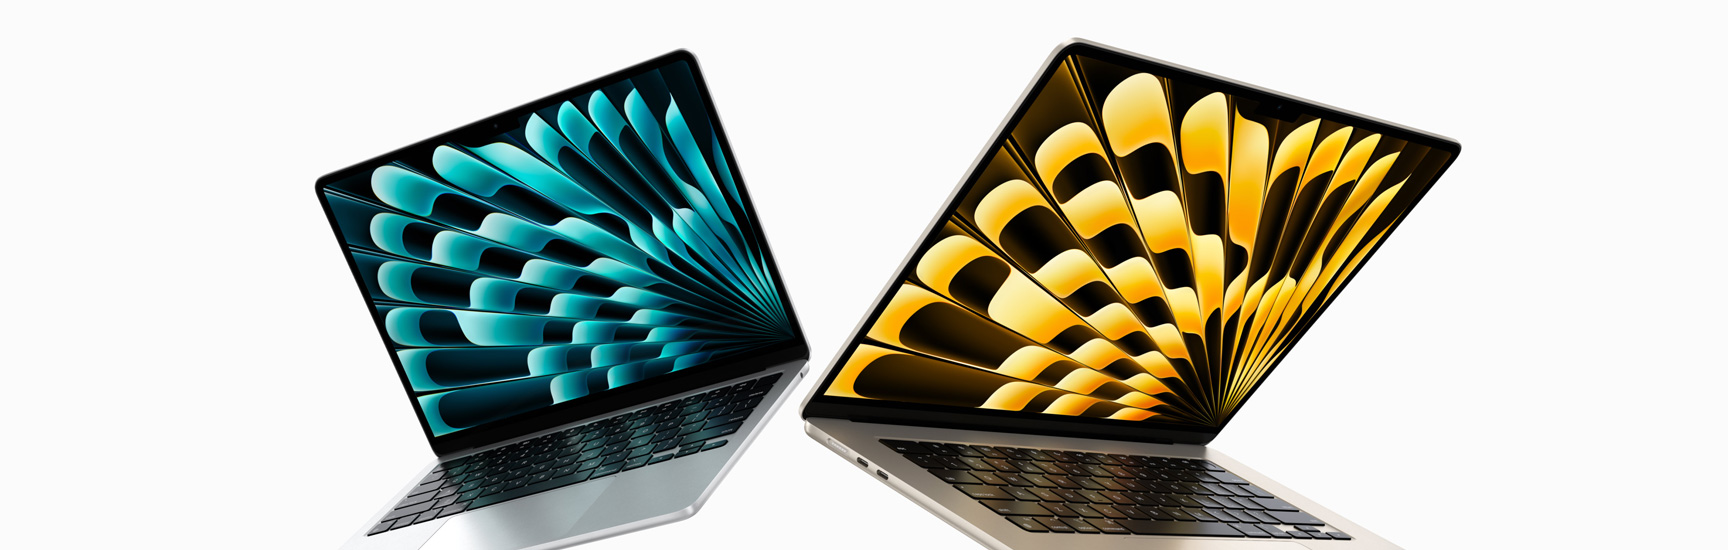 Vista anteriore di un MacBook Air da 13 pollici color argento e uno da 15 pollici color galassia parzialmente aperti che mostra la differenza nelle dimensioni degli schermi.